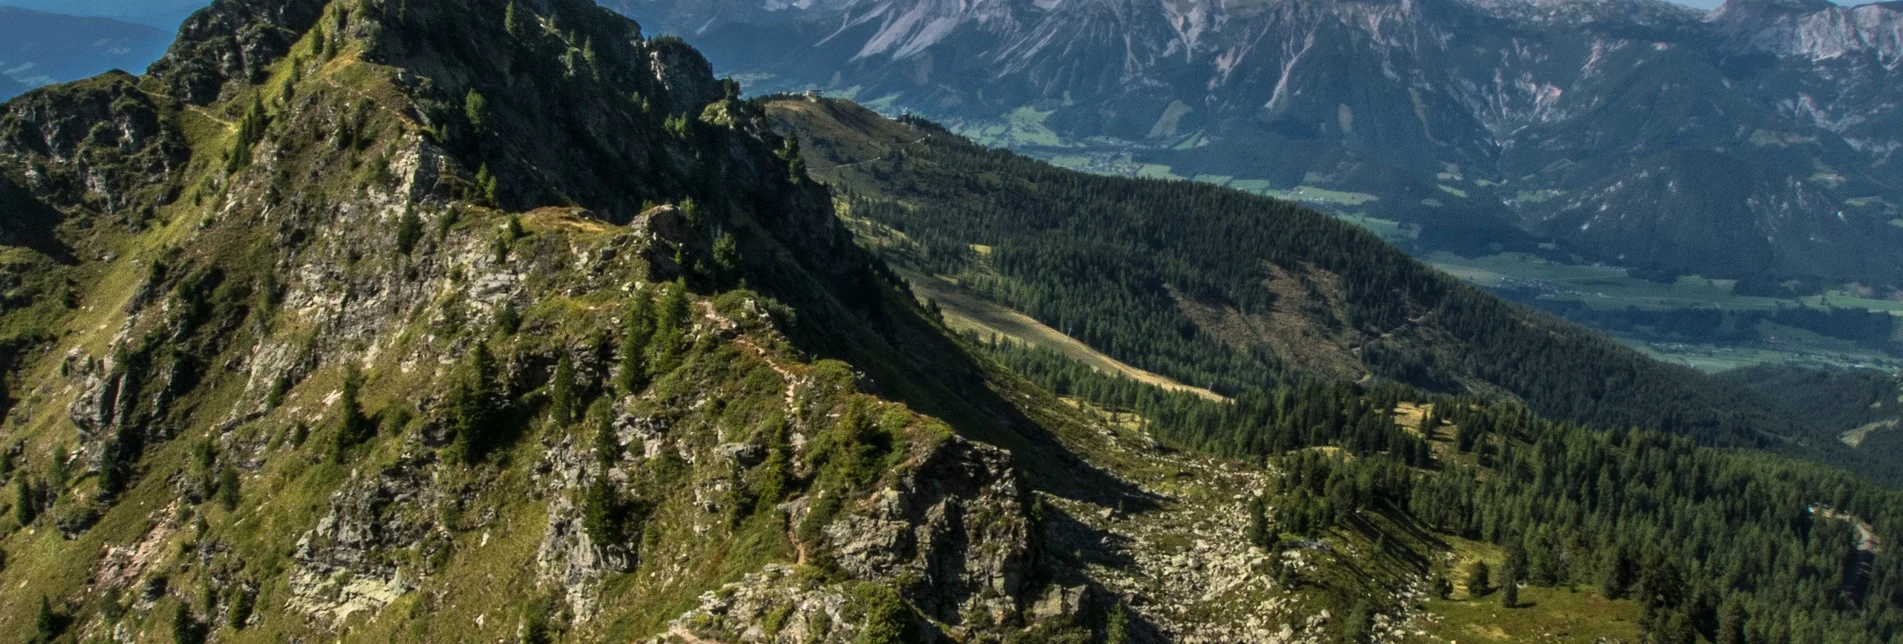 Fernwanderweg Schladminger Tauern Höhenweg | 5-Tages-Tour - Touren-Impression #1 | © Gerhard Pilz